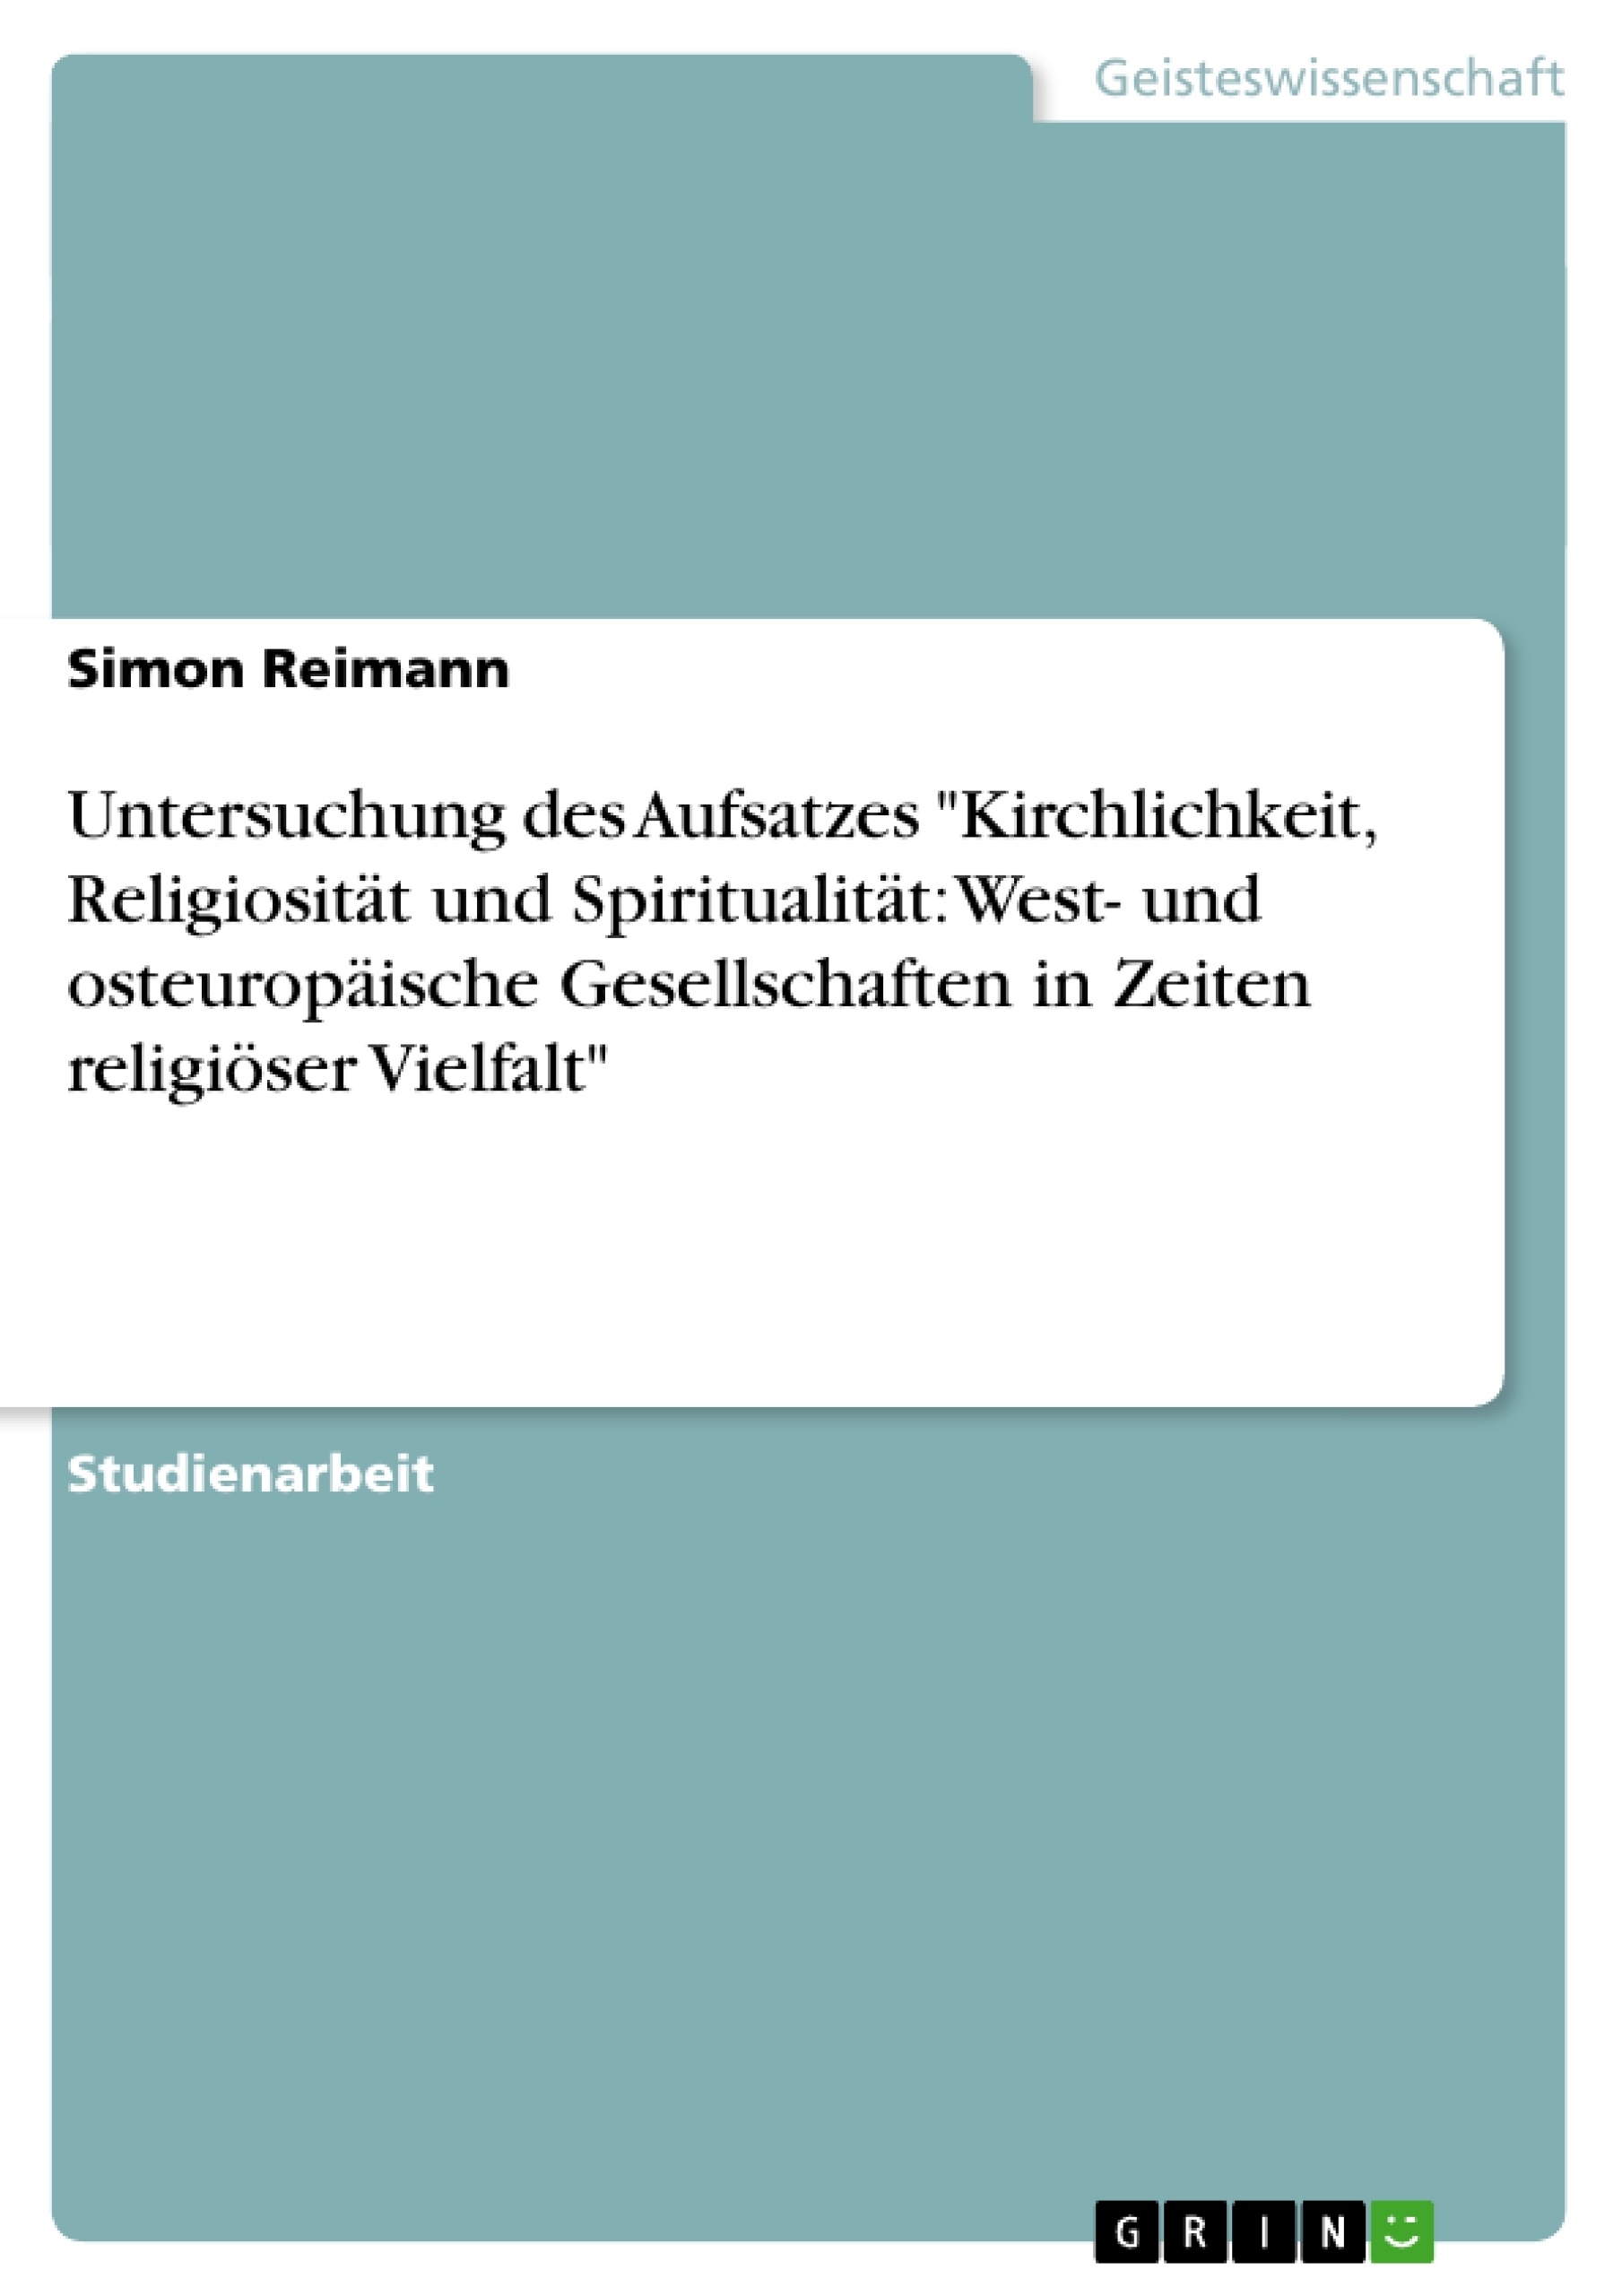 Titre: Untersuchung des Aufsatzes "Kirchlichkeit, Religiosität und Spiritualität: West- und osteuropäische Gesellschaften in Zeiten religiöser Vielfalt"